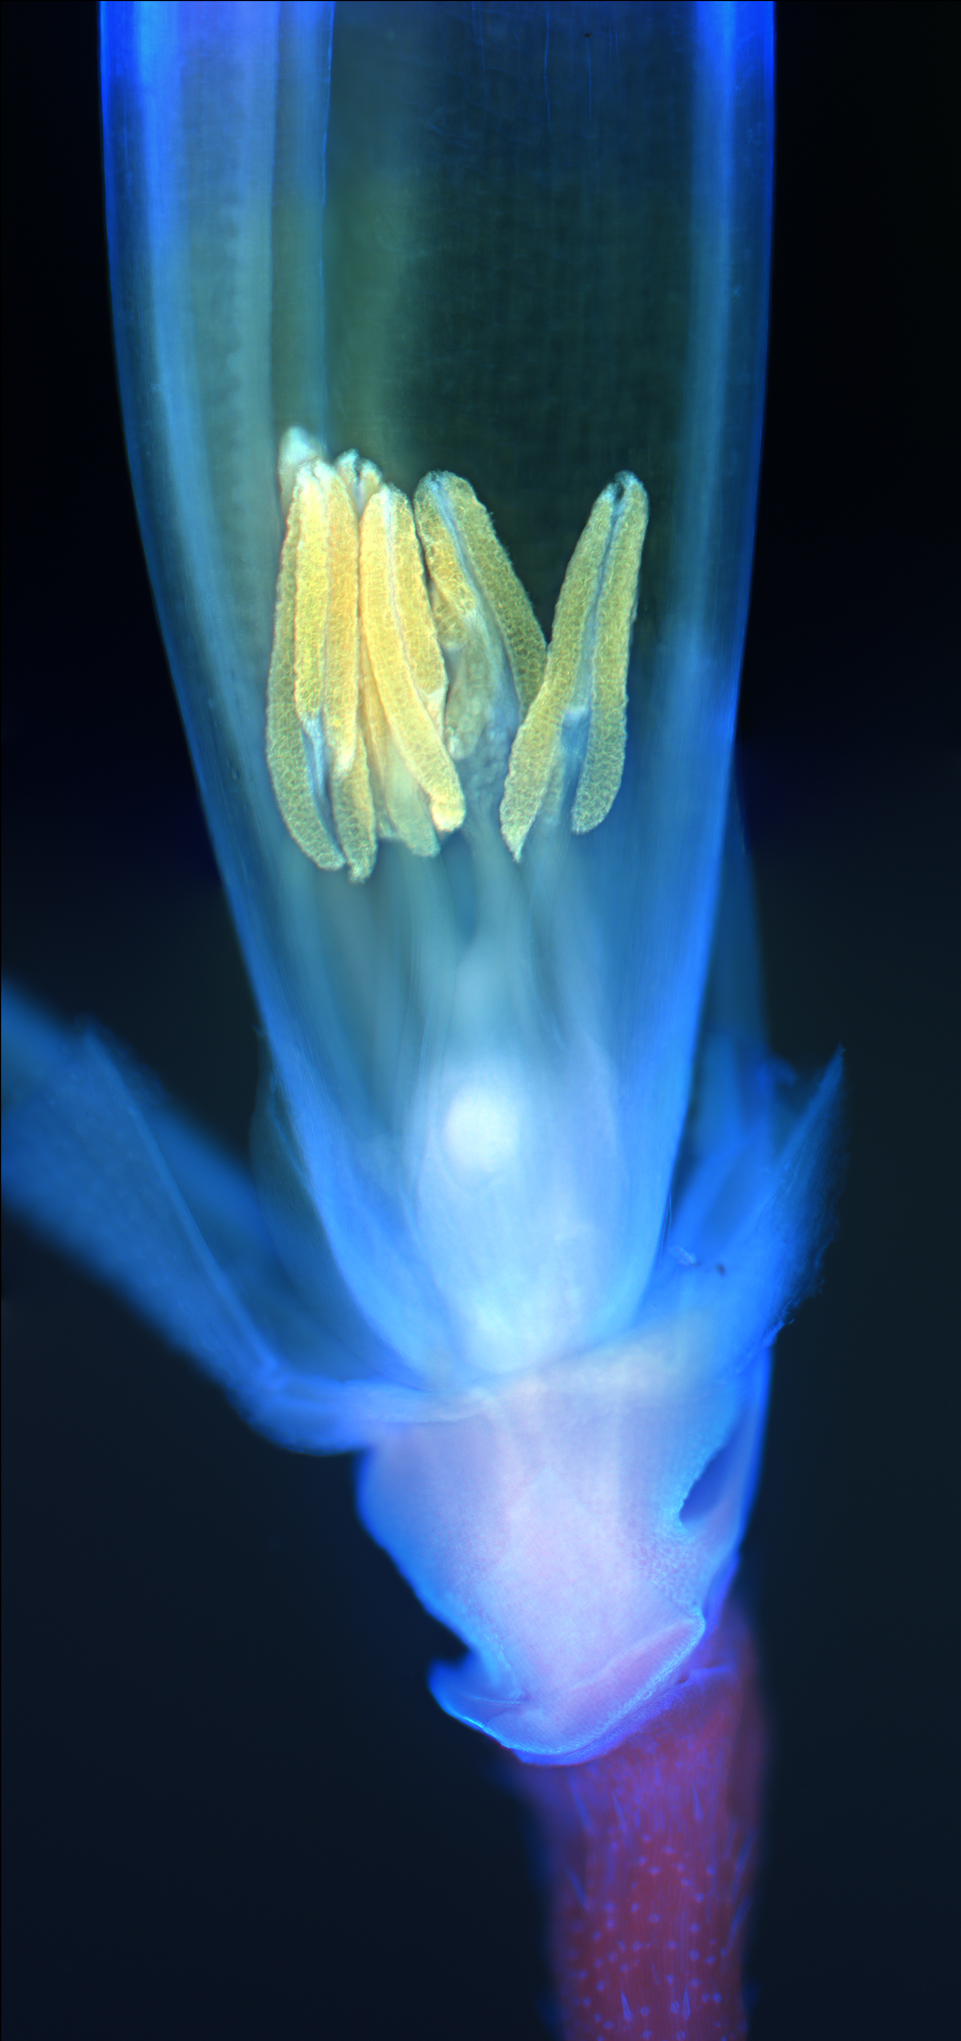 Fluoreszenz-Mikroskopfaufnahme einer Reisblüte.